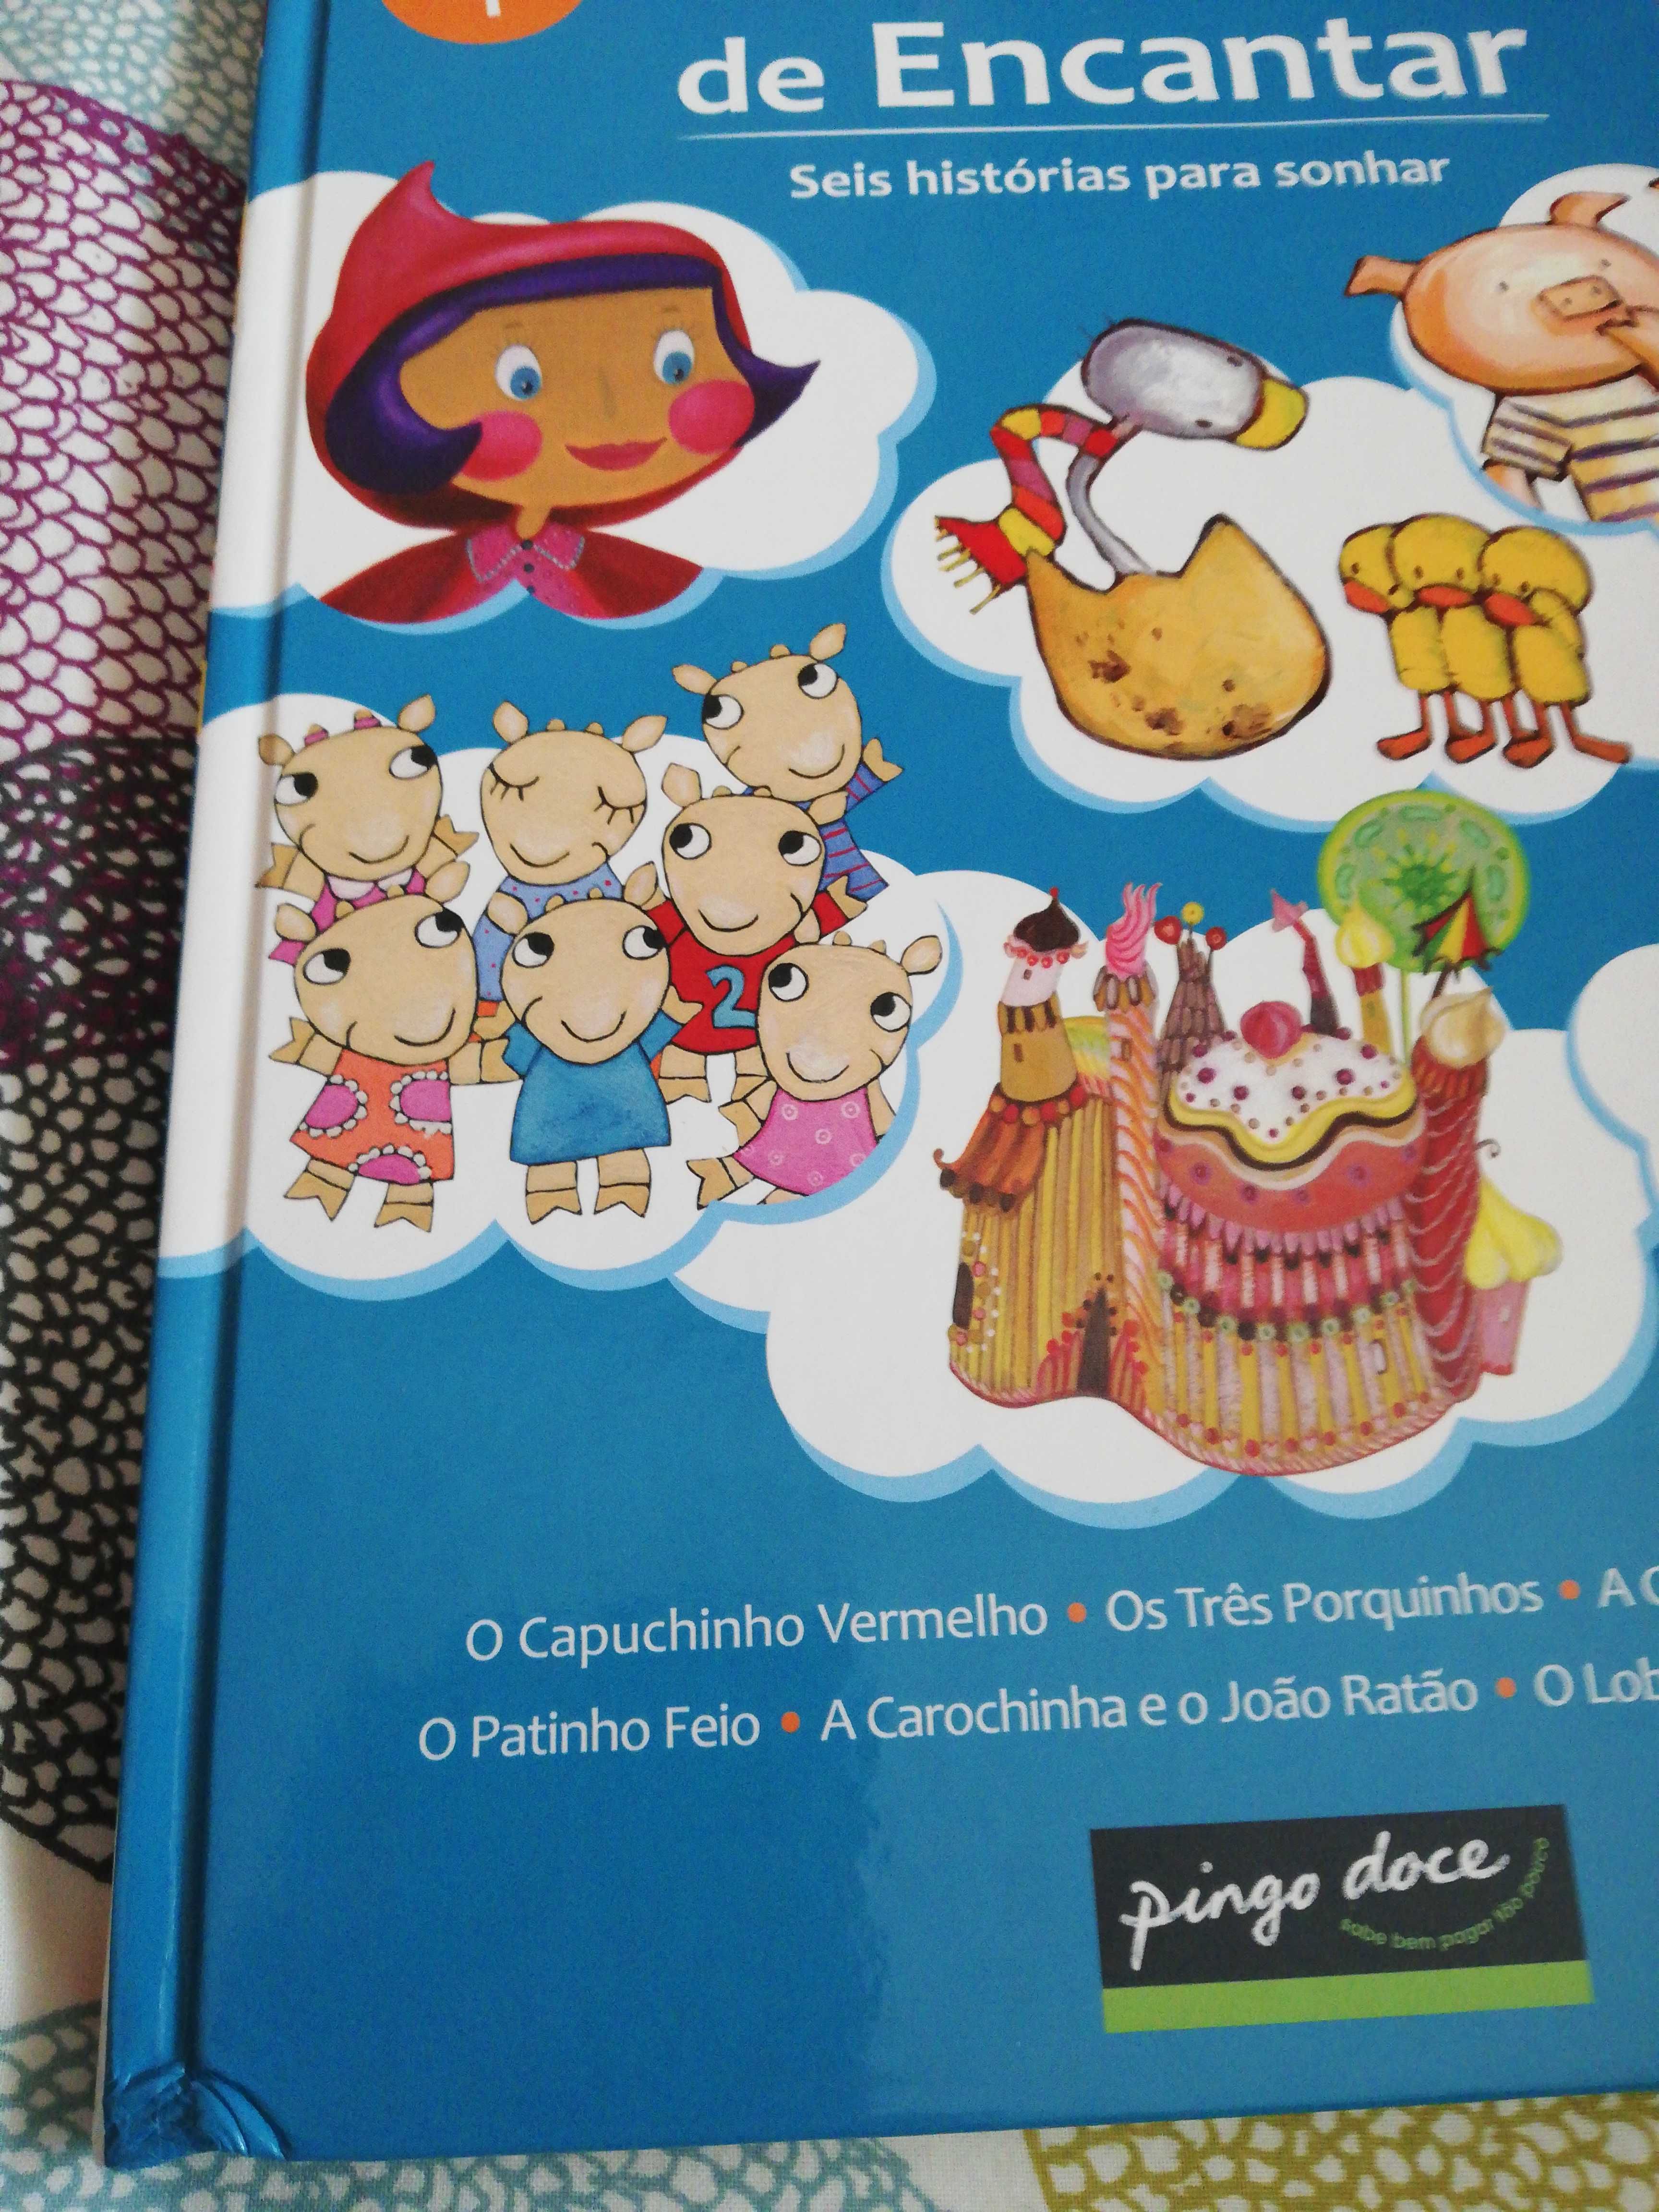 Livro volume 1-Histórias de encantar-Pingo doce